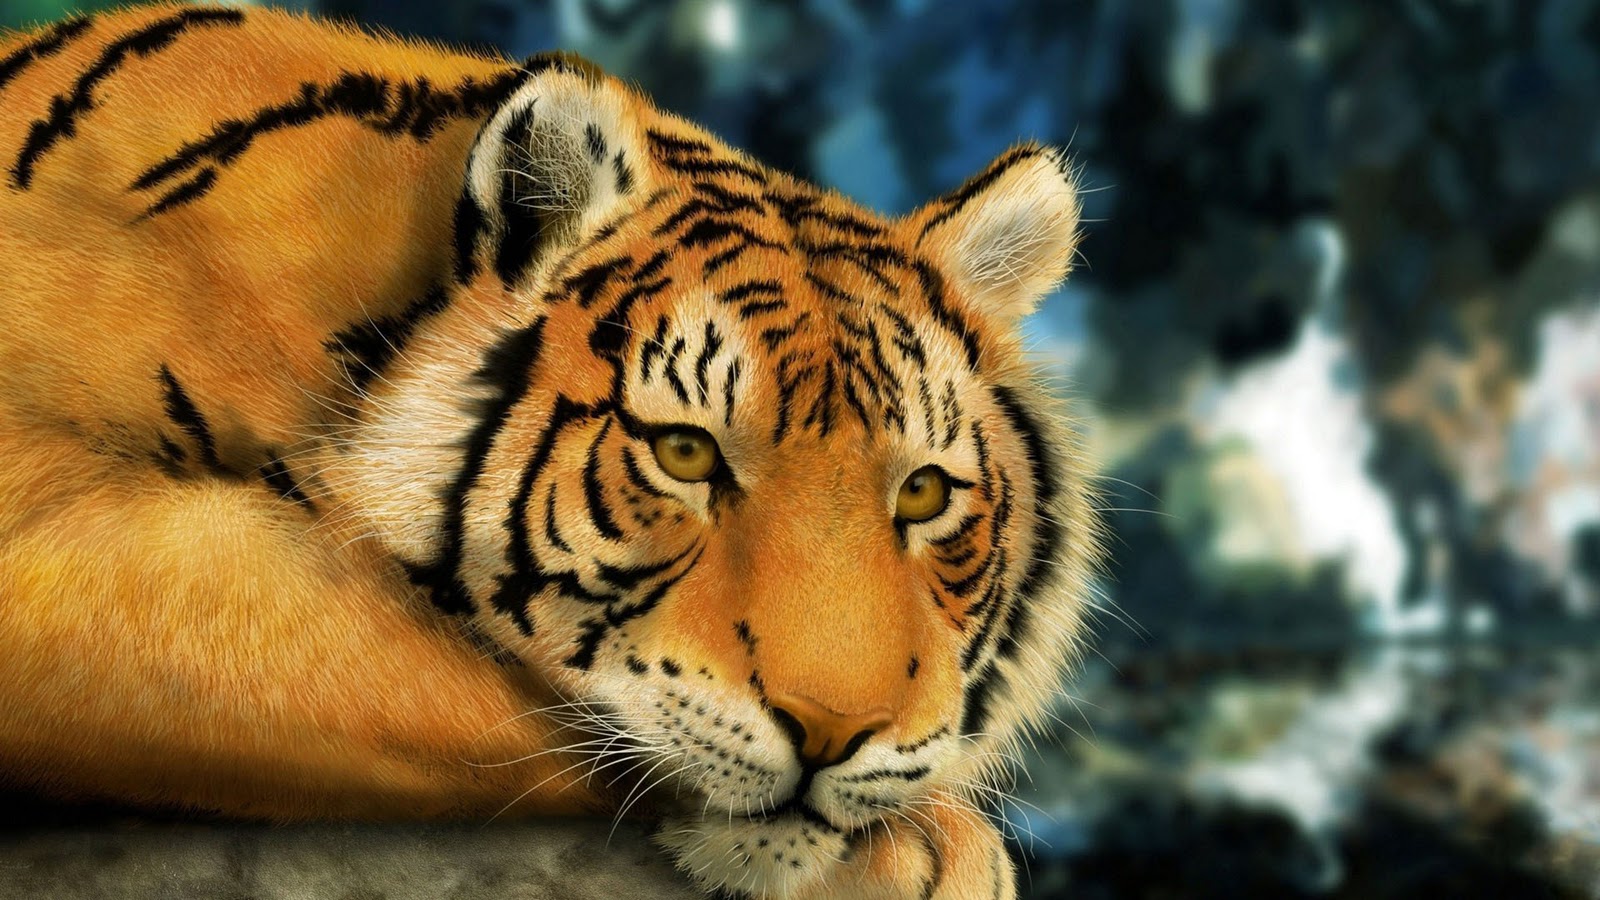 49+] Cool Wallpapers of Tigers - WallpaperSafari